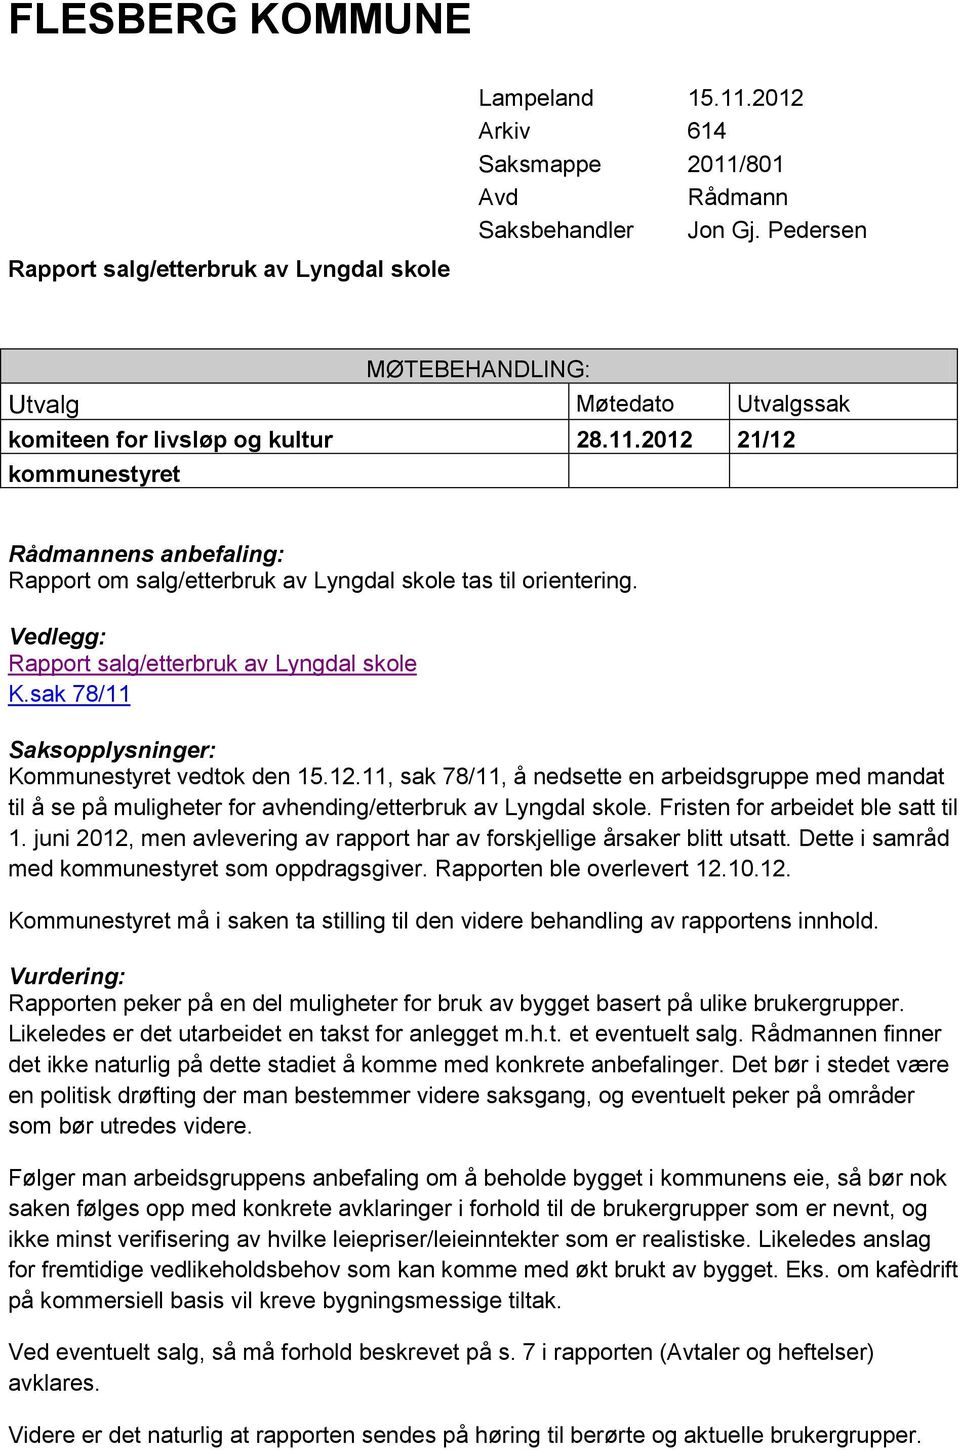 Vedlegg: Rapport salg/etterbruk av Lyngdal skole K.sak 78/11 Saksopplysninger: Kommunestyret vedtok den 15.12.